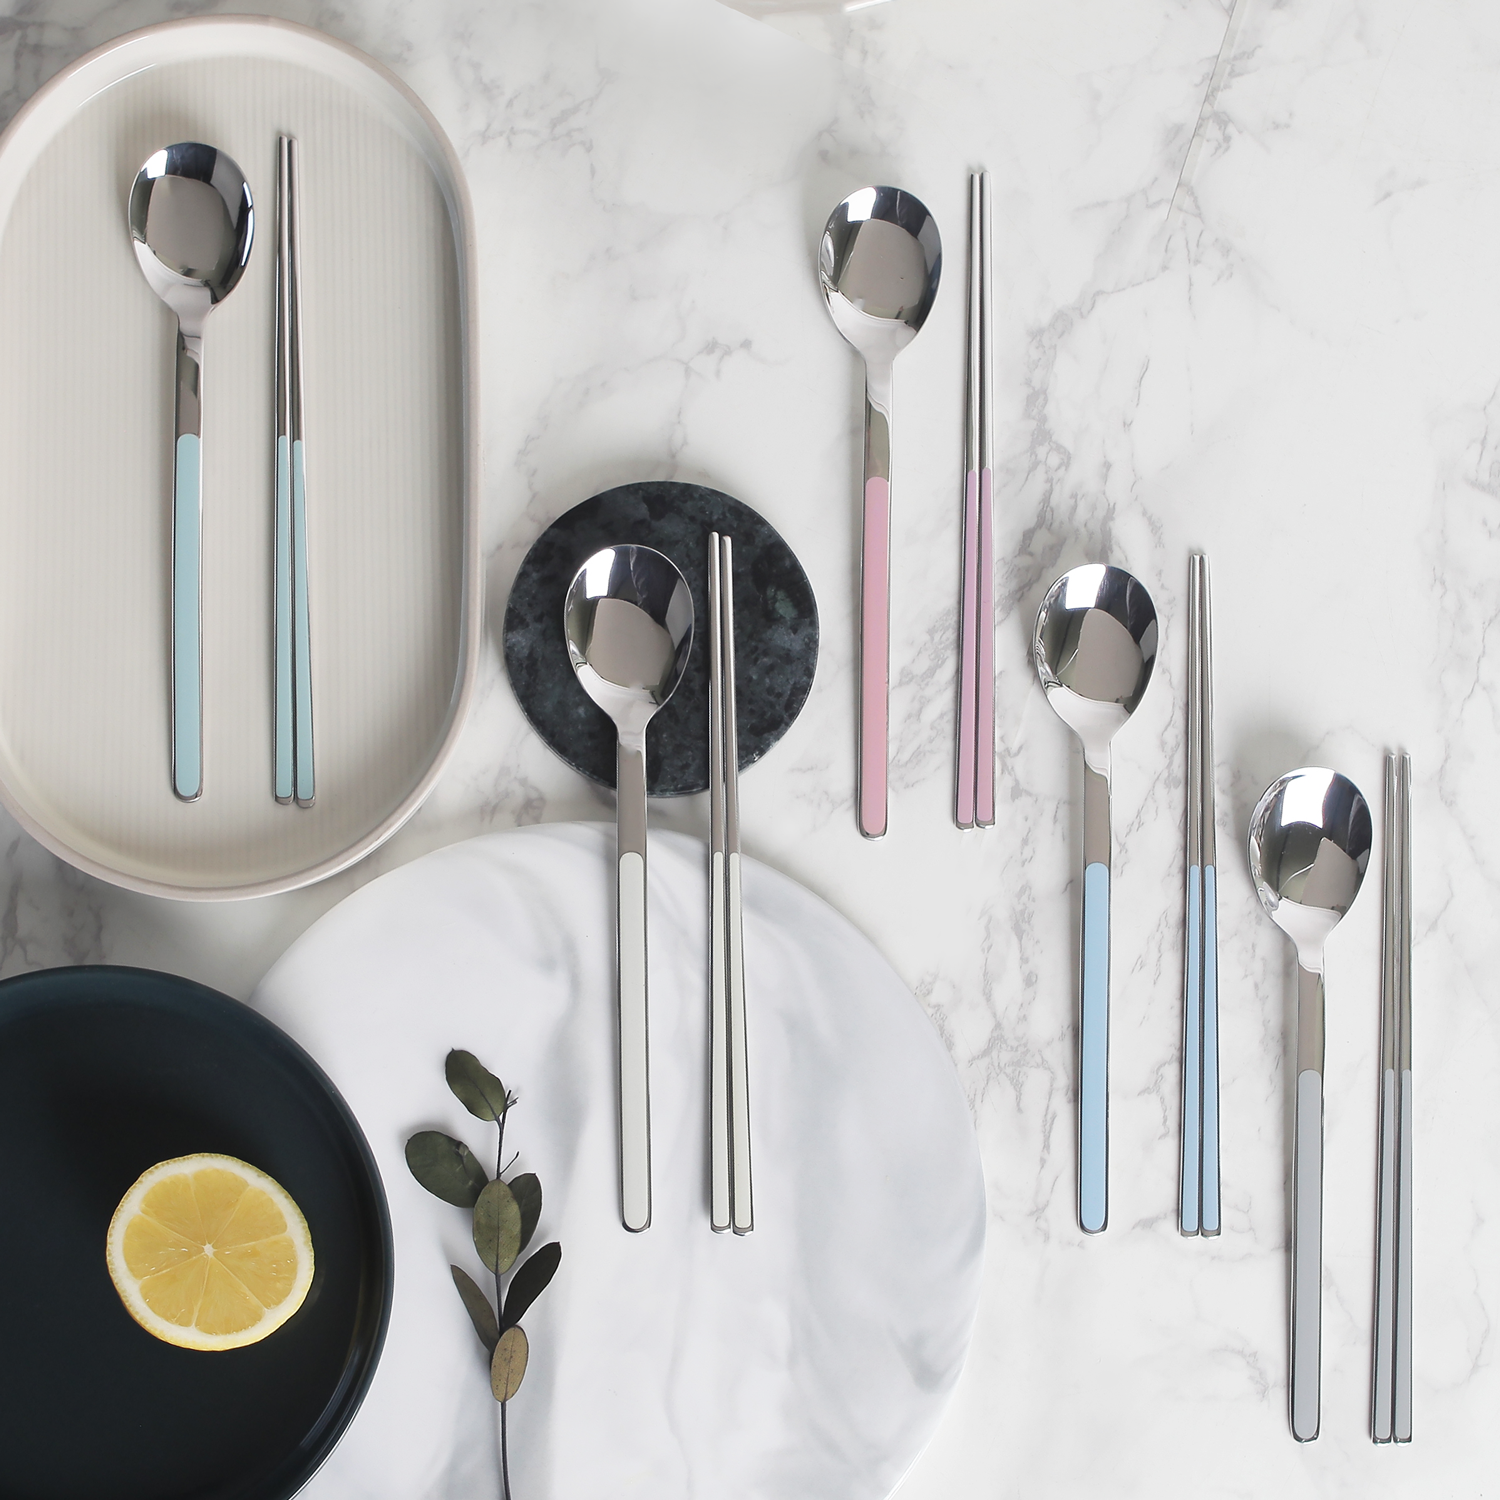 Goldenbell Spoon & Chopsticks set for 5 person set